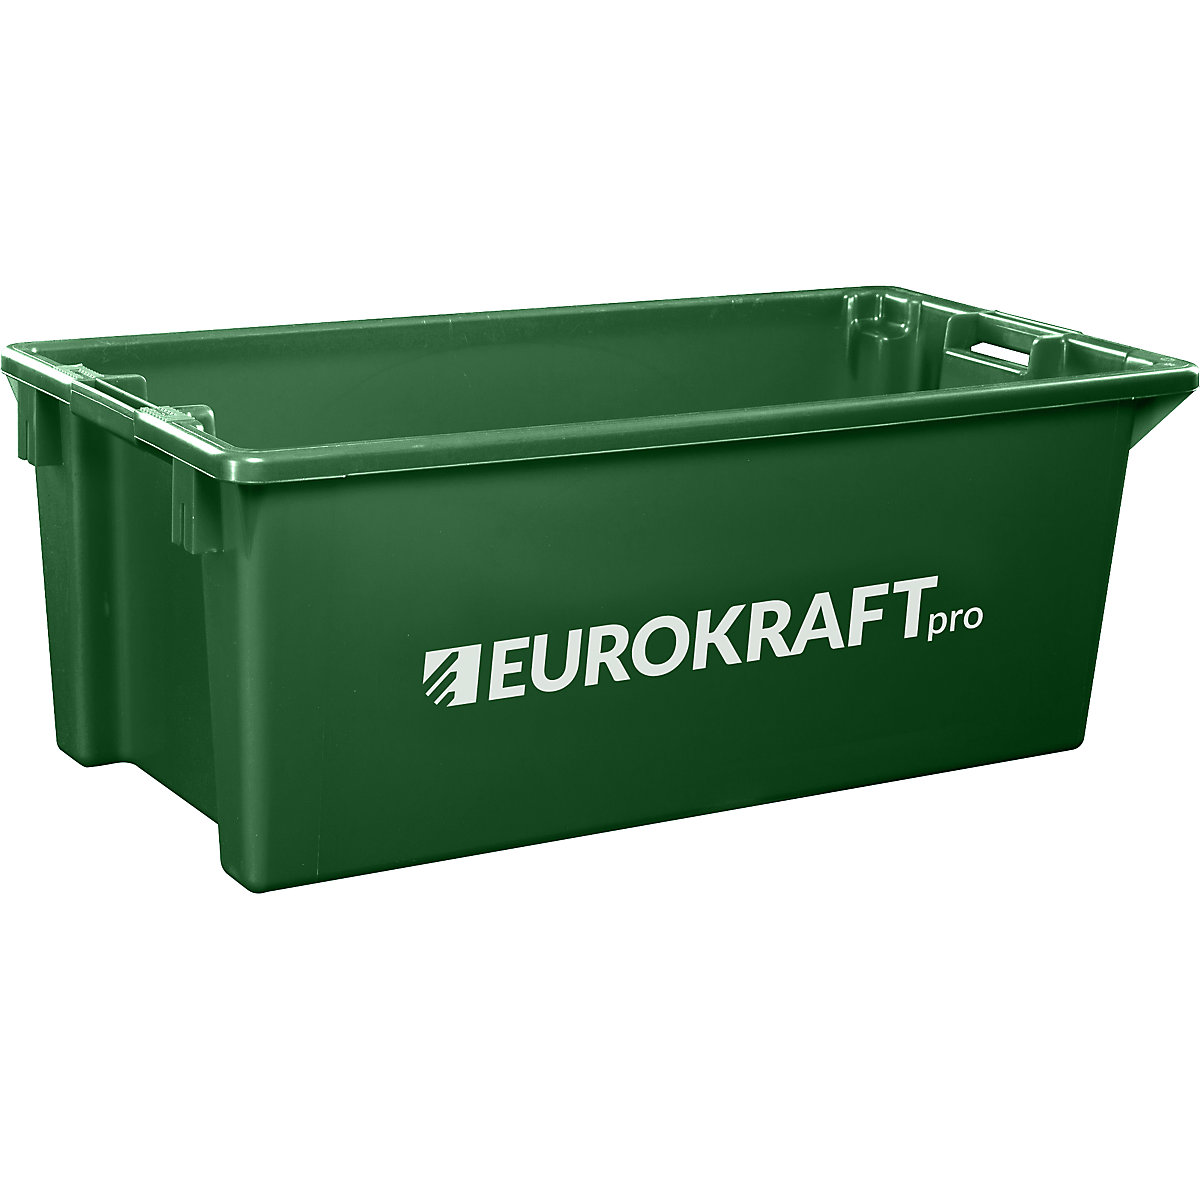 Zasučna posoda za zlaganje iz polipropilena, primernega za živila – eurokraft pro, prostornina 13 l, DE 4 kosi, stene in dno zaprti, zelena